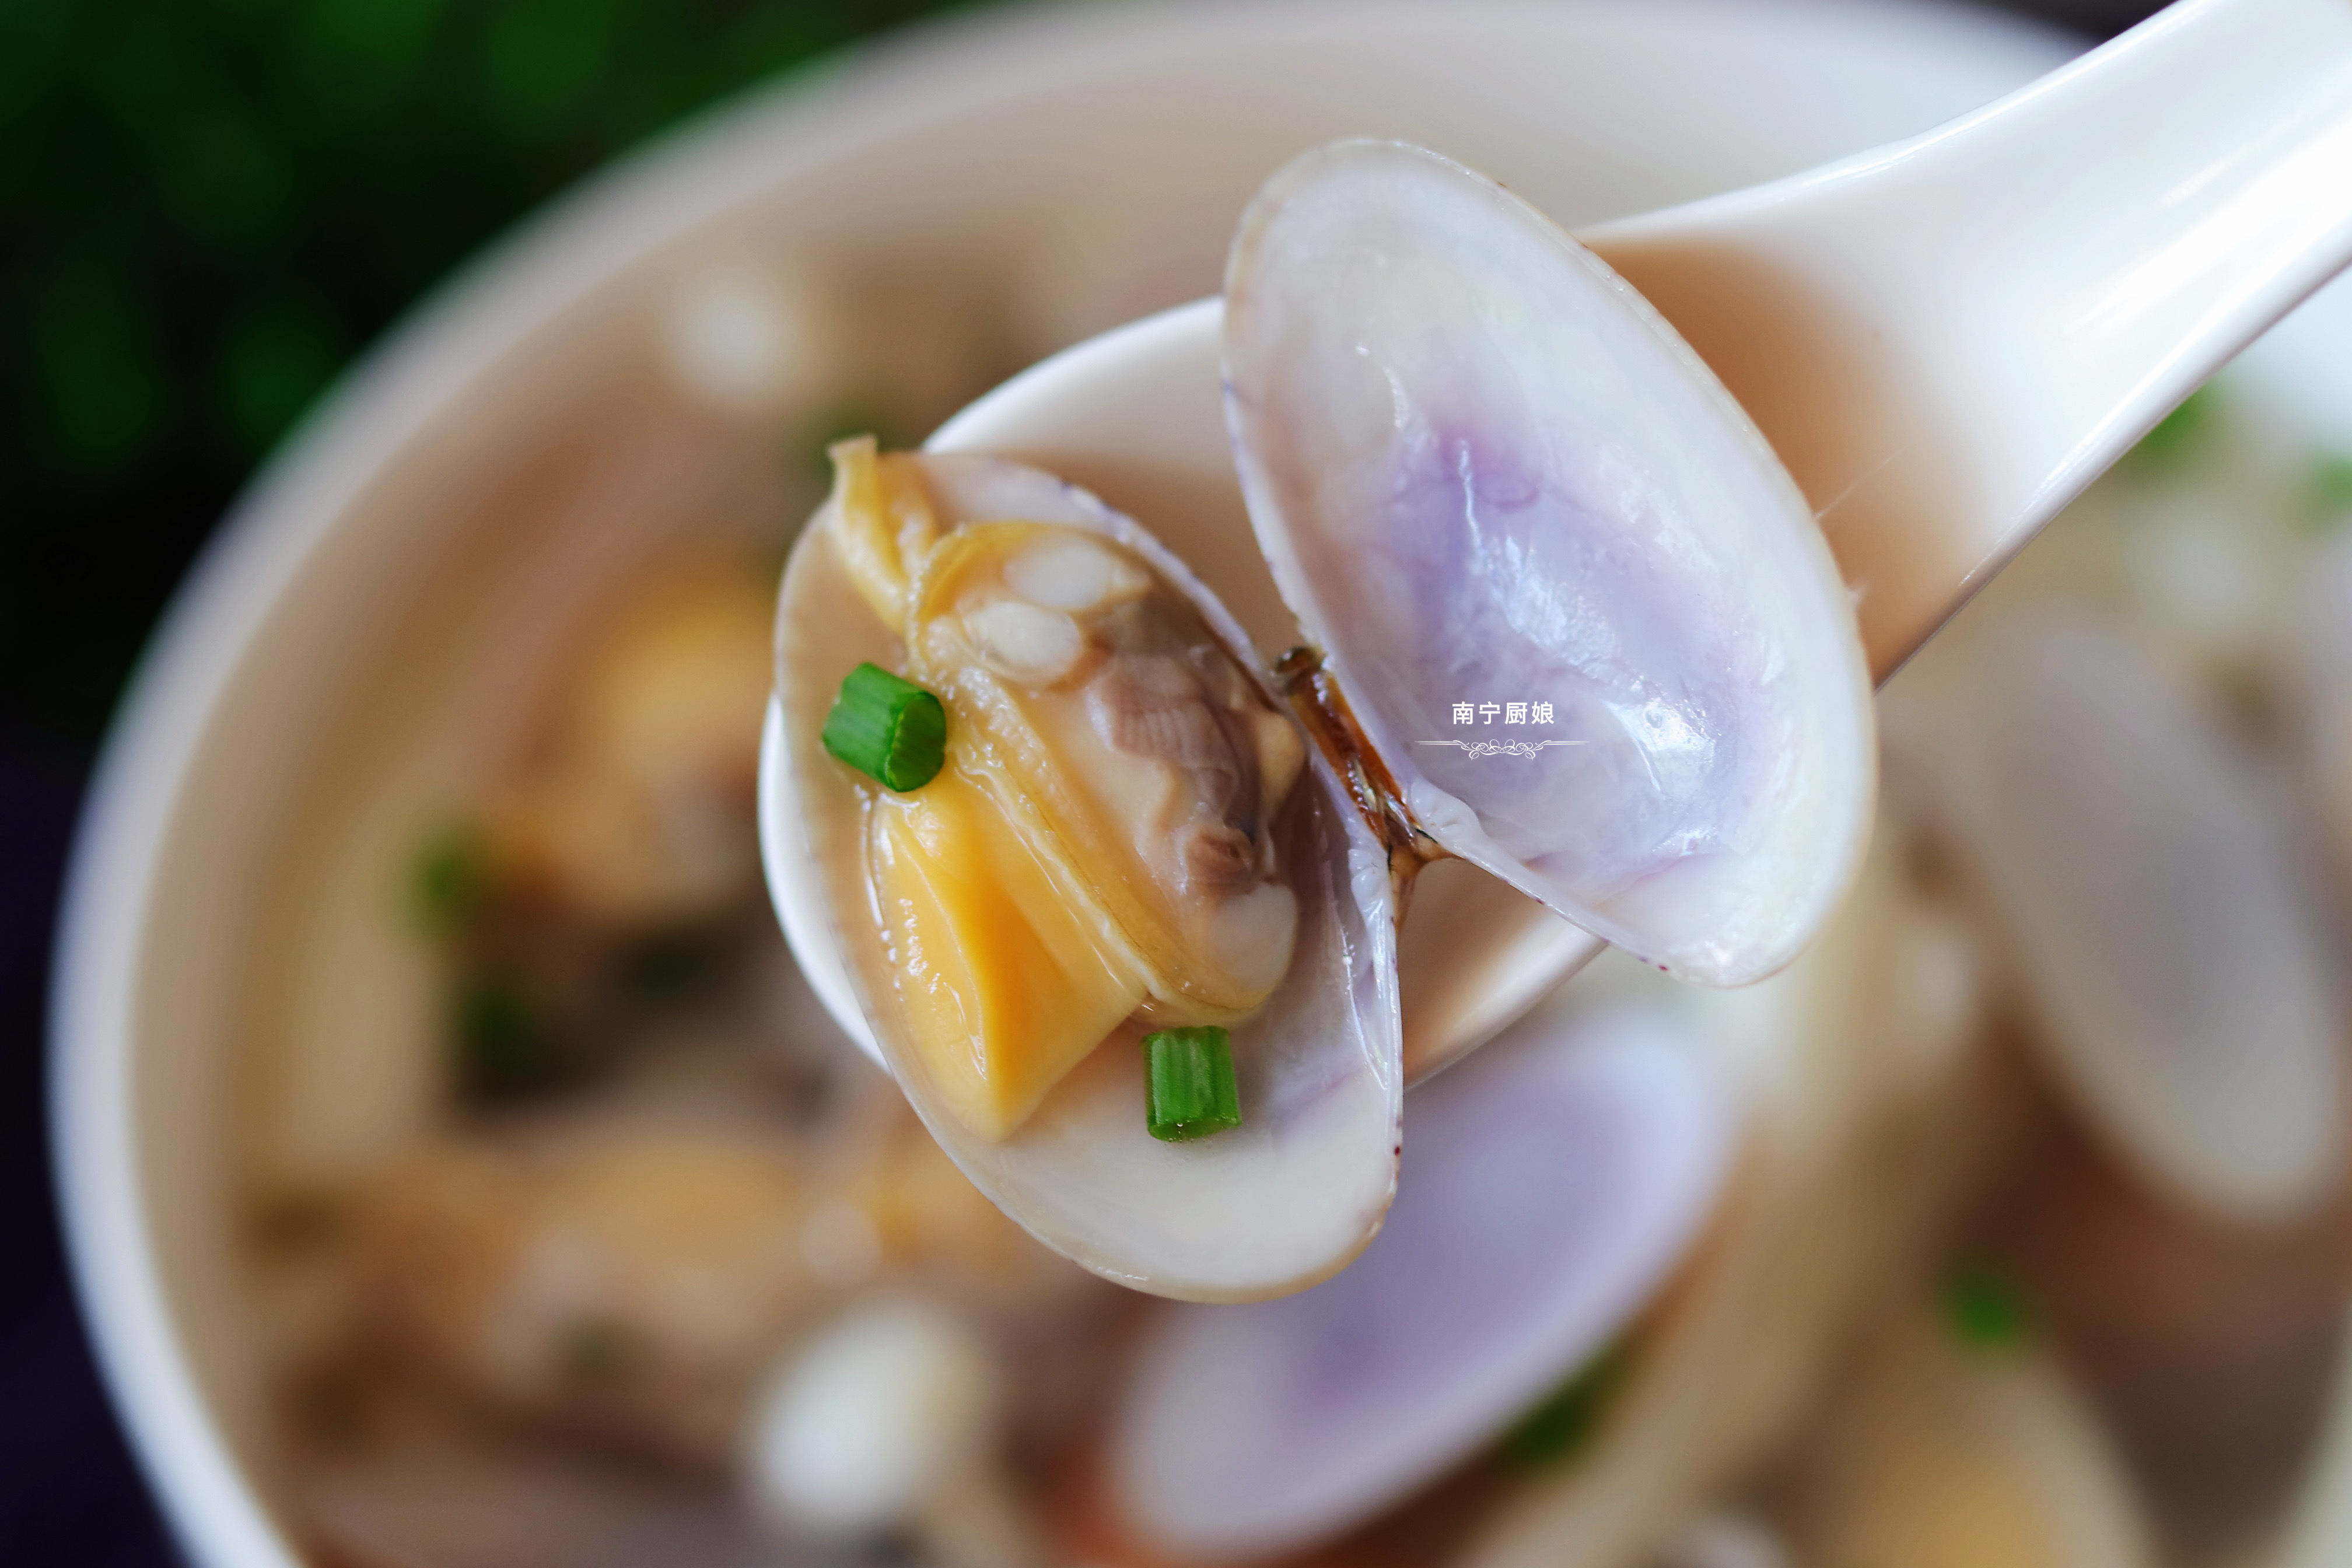 秋天我家必吃的海鲜是花甲，用来和海鲜菇一起打汤喝，鲜美又营养